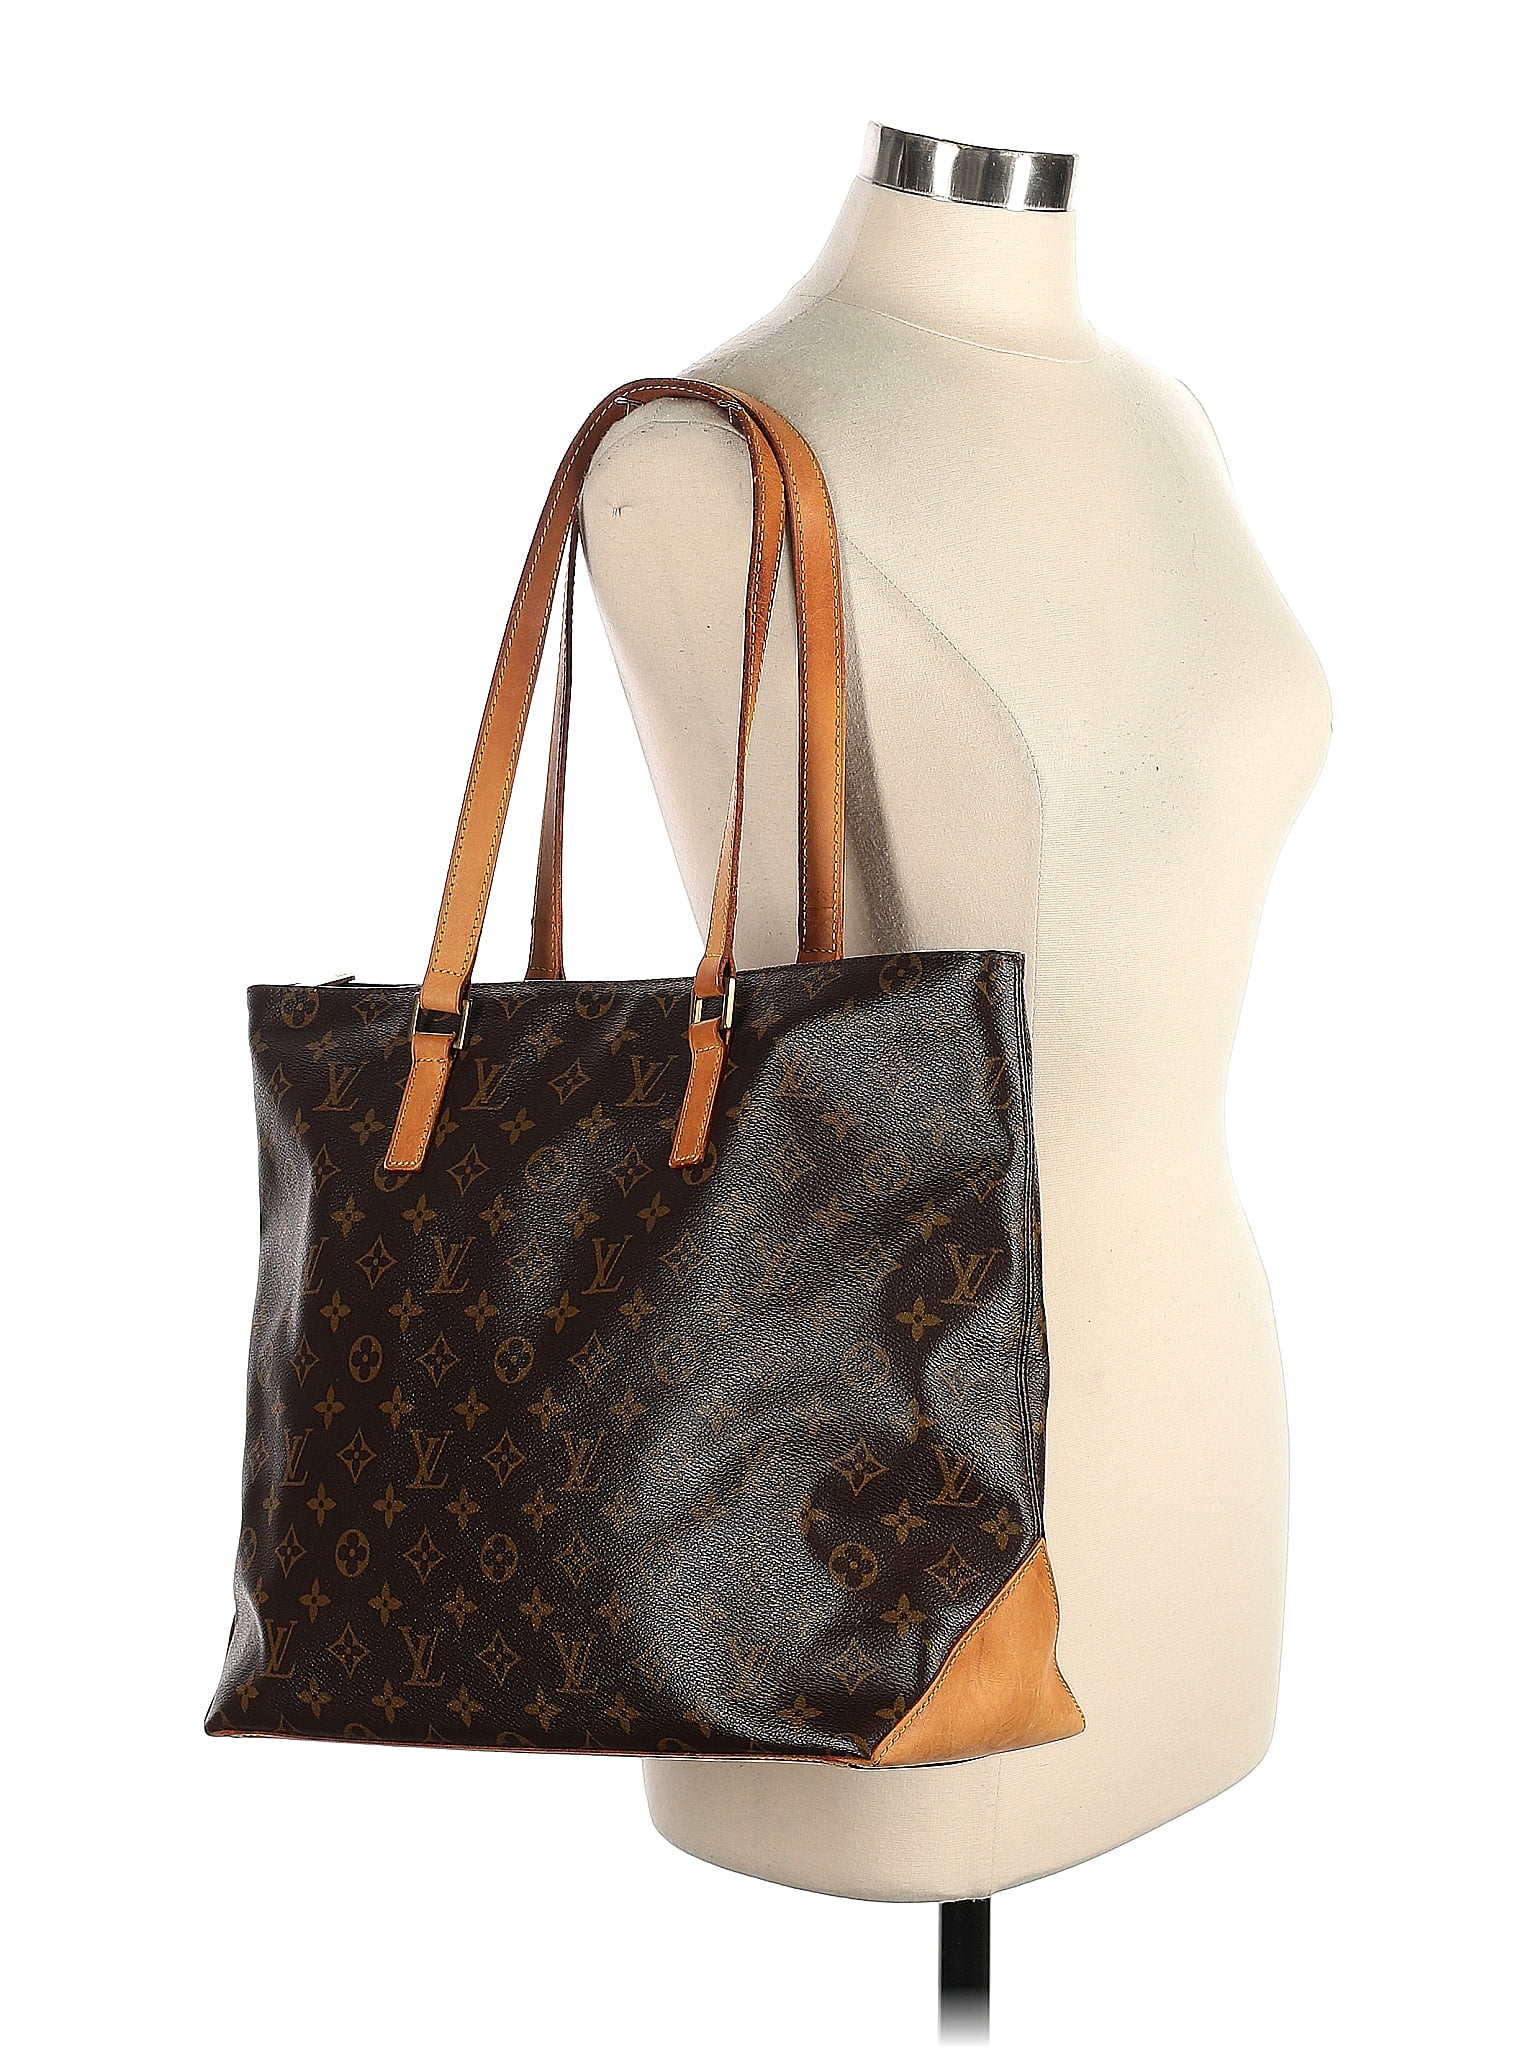 Lot - Louis Vuitton monogram Sac Plat tote shoulder bag: coated